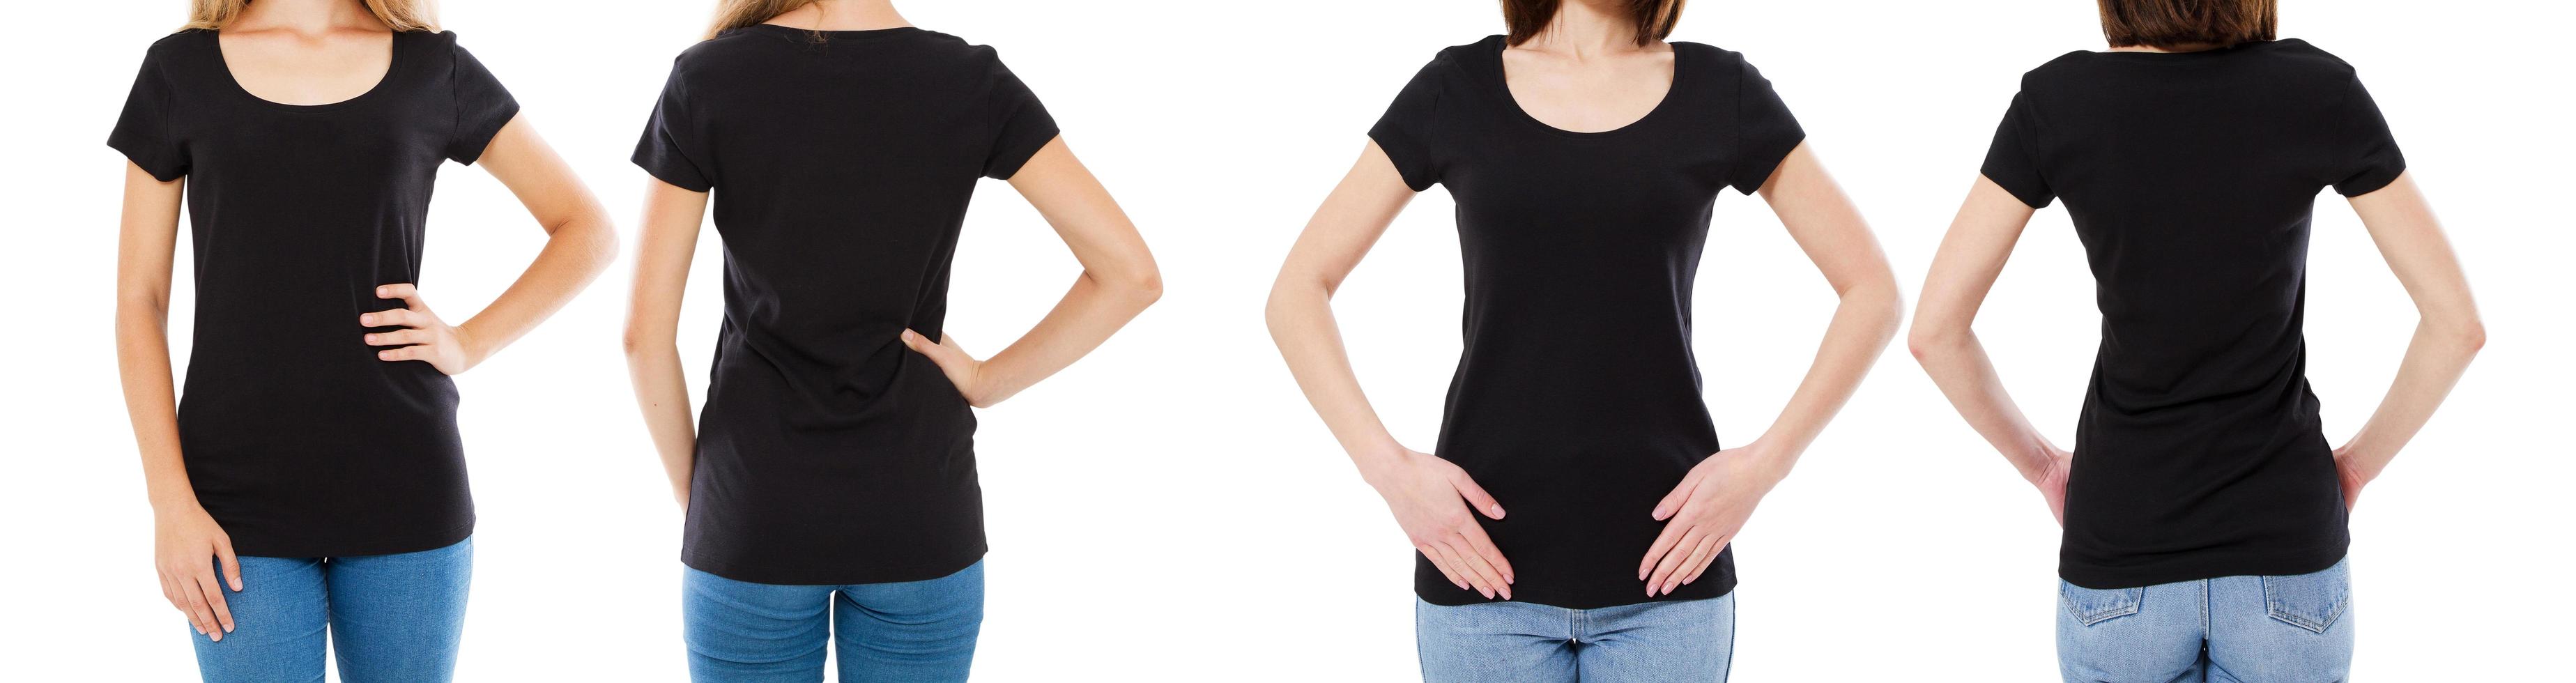 deux femme en t-shirt noir image recadrée vue avant et arrière, ensemble de t-shirts, t-shirt de maquette vierge photo